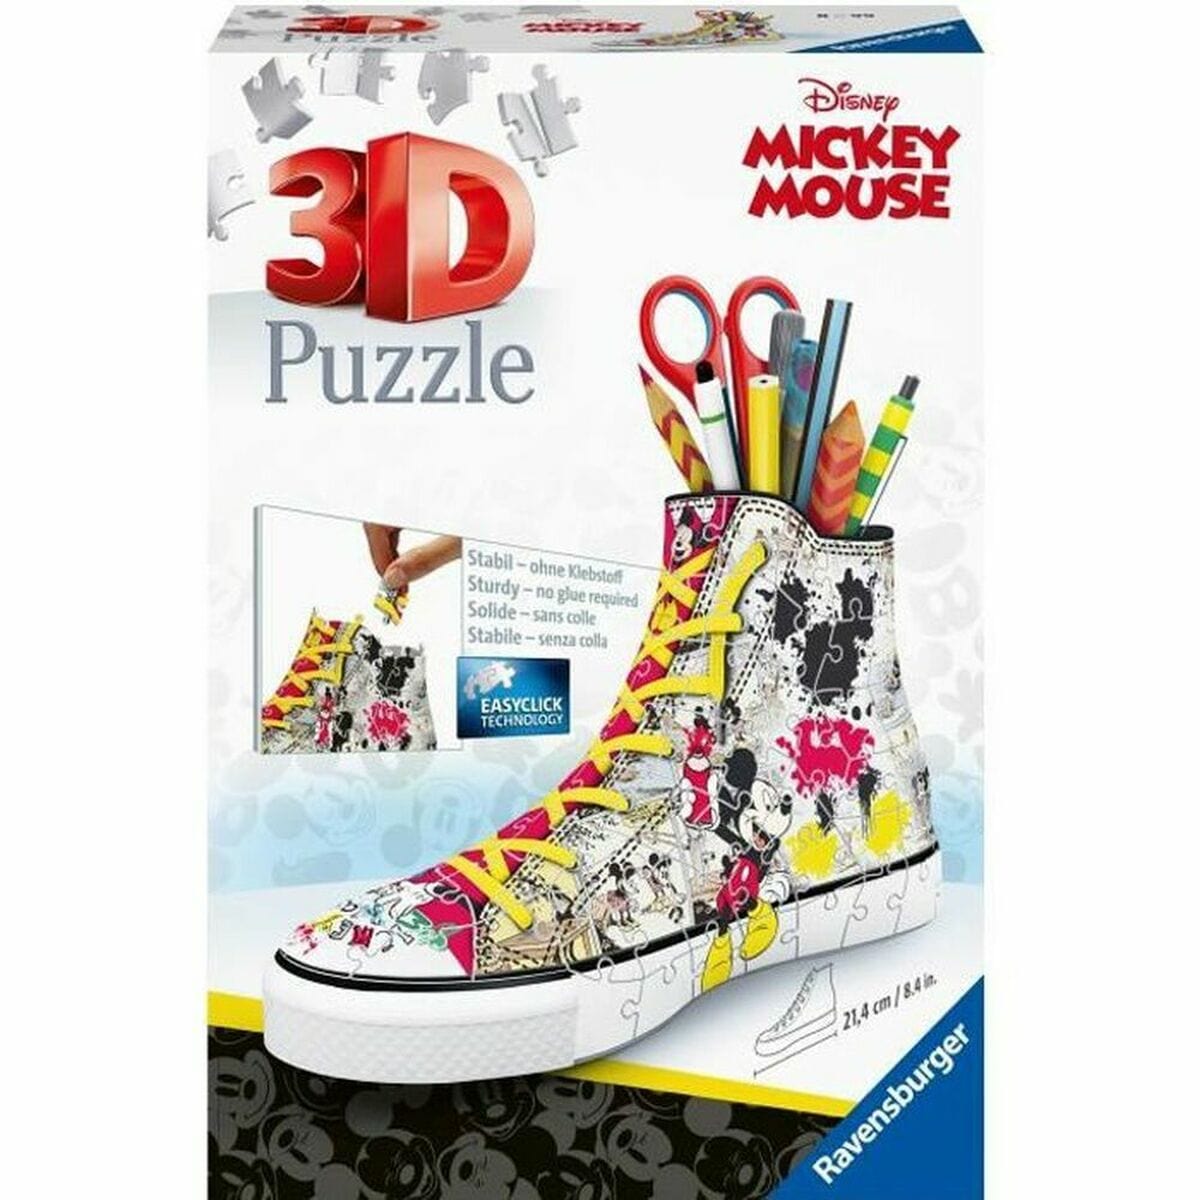 Ravensburger Spielzeug | Kostüme > Spielzeug und Spiele > Puzzle und Bauklötzchen 3D Puzzle Ravensburger Sneaker Mickey Mouse (108 Stücke)